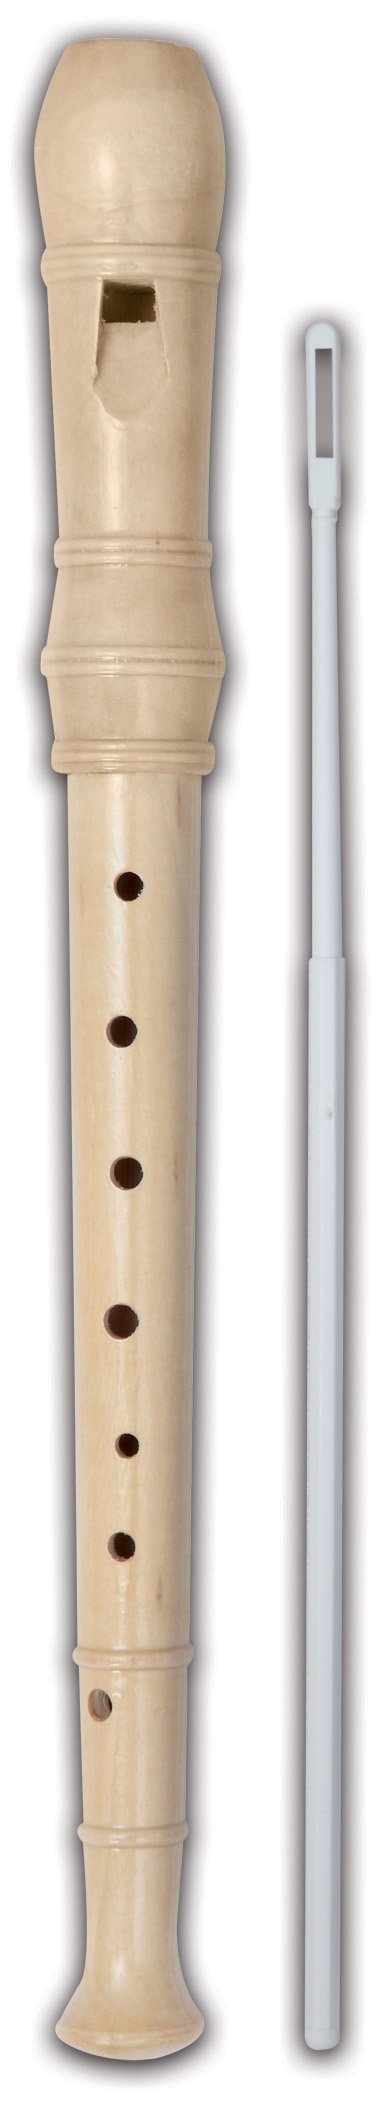 Flauto soprano dolce in legno digitatura tedesca